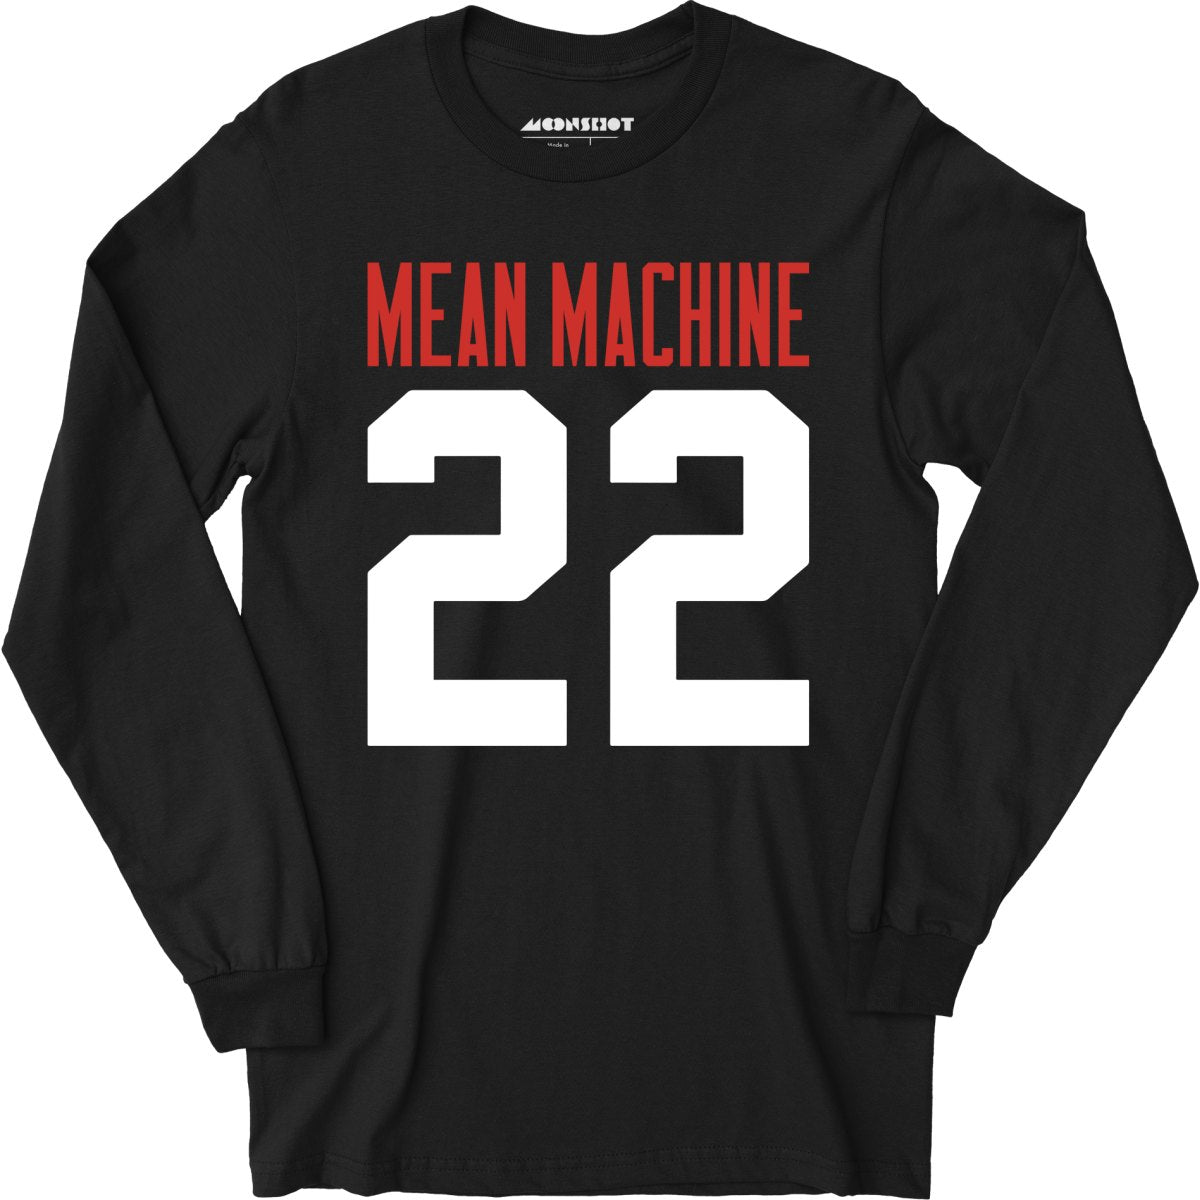 Mean Machine Football Jersey - Long Sleeve T-Shirt